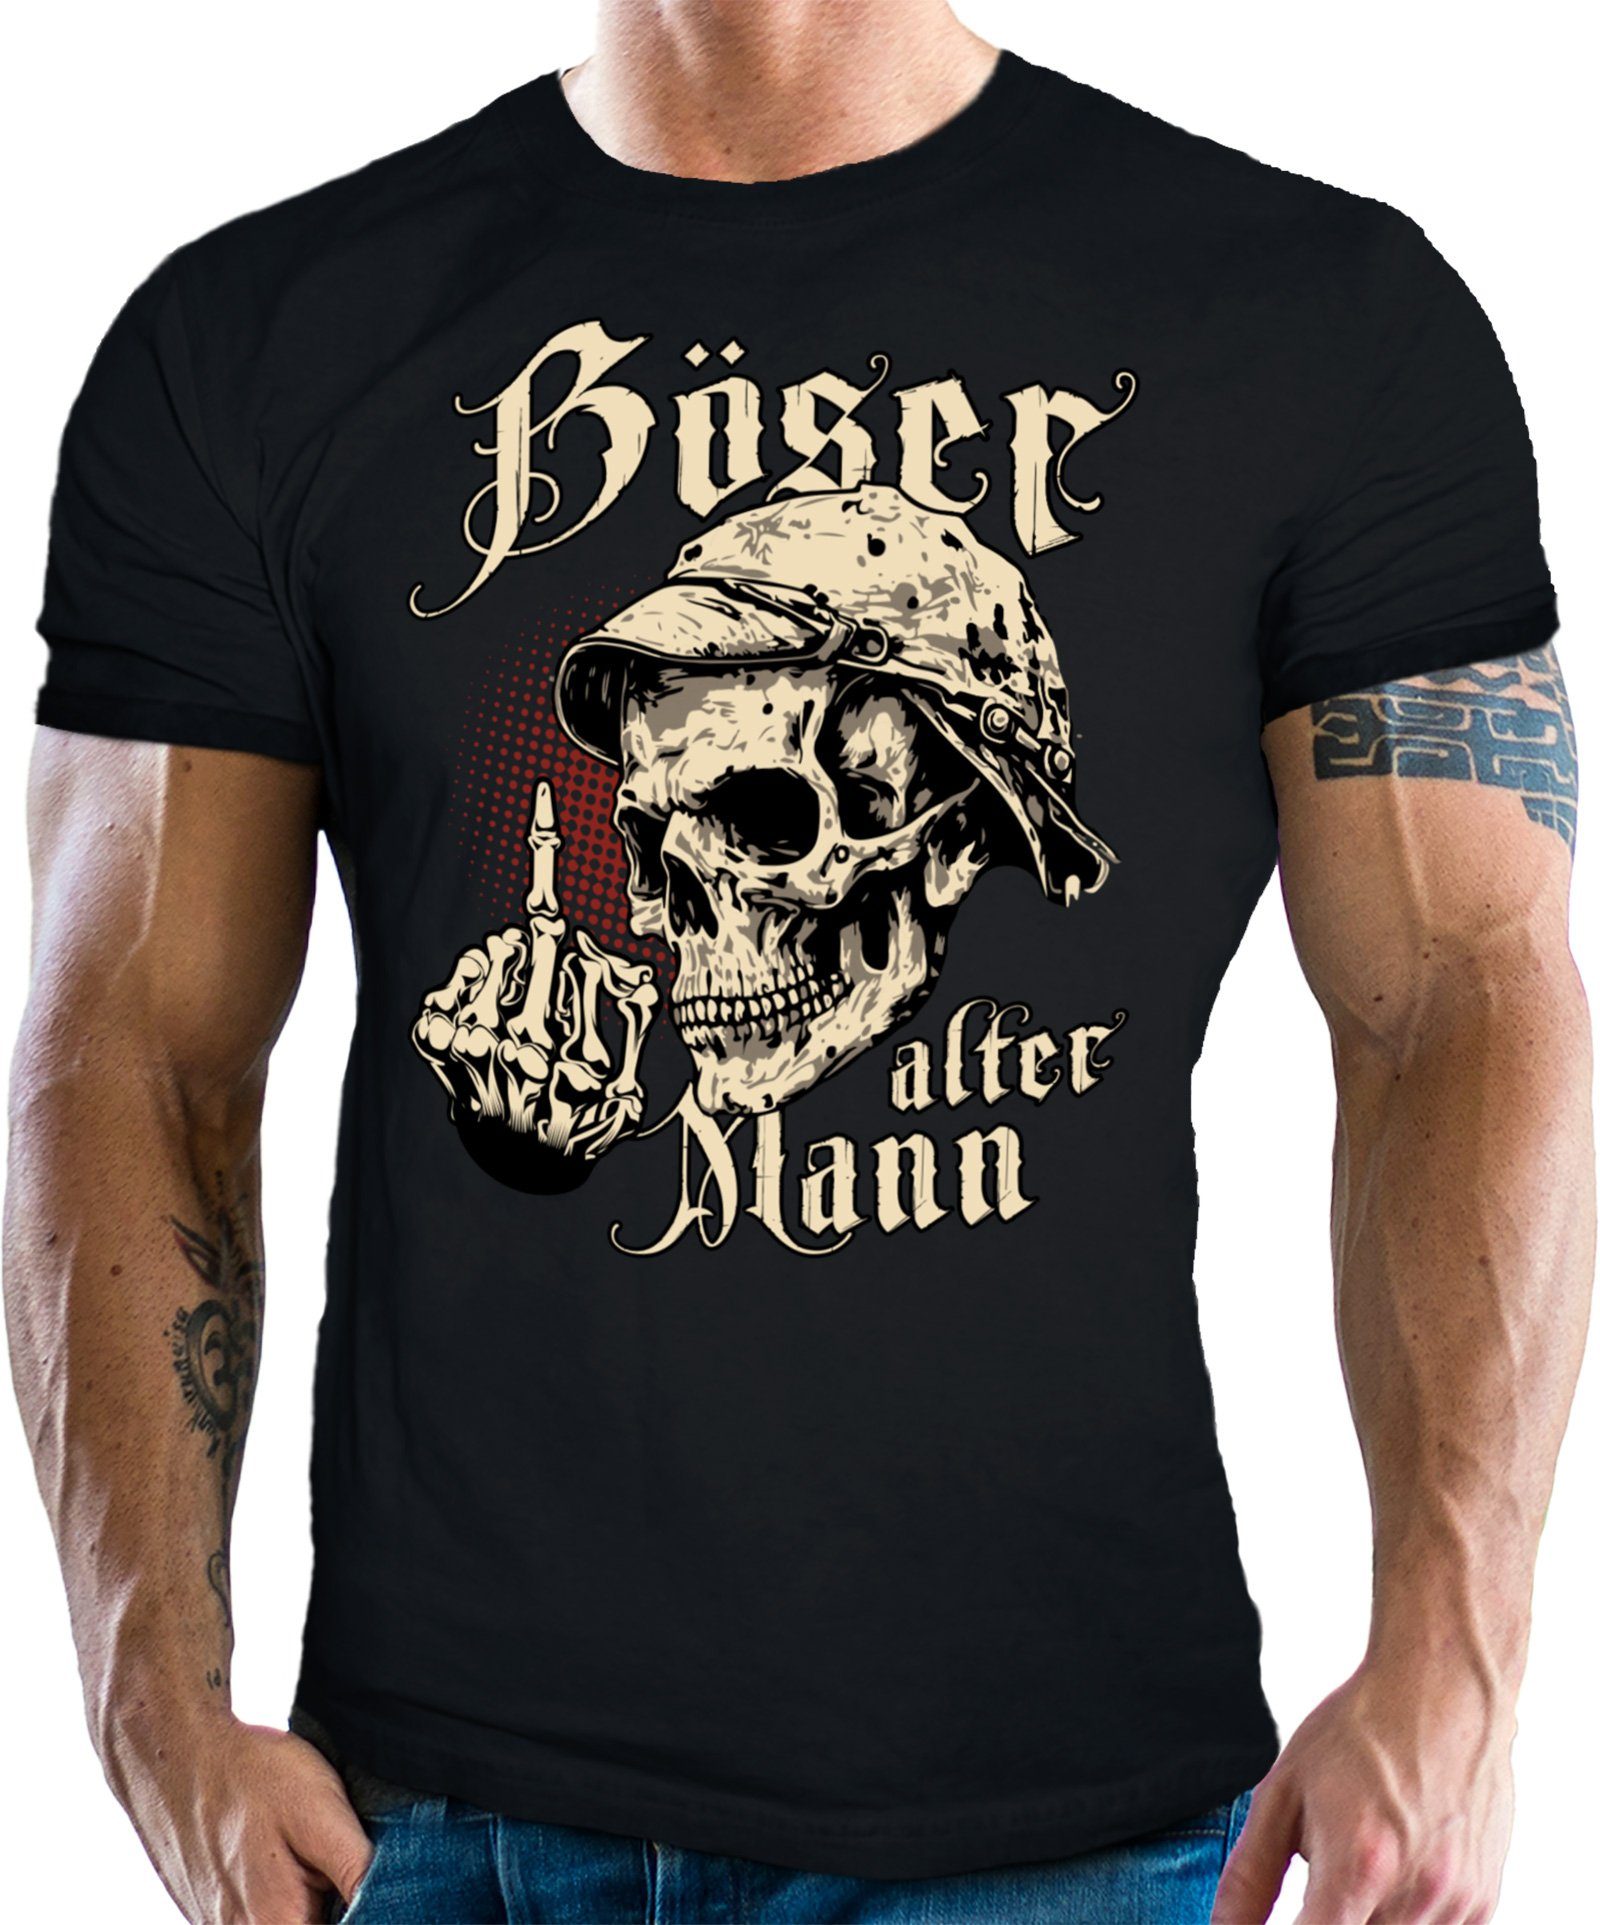 LOBO NEGRO® T-Shirt für den etwas älteren Nörgler: Böser Alter Mann